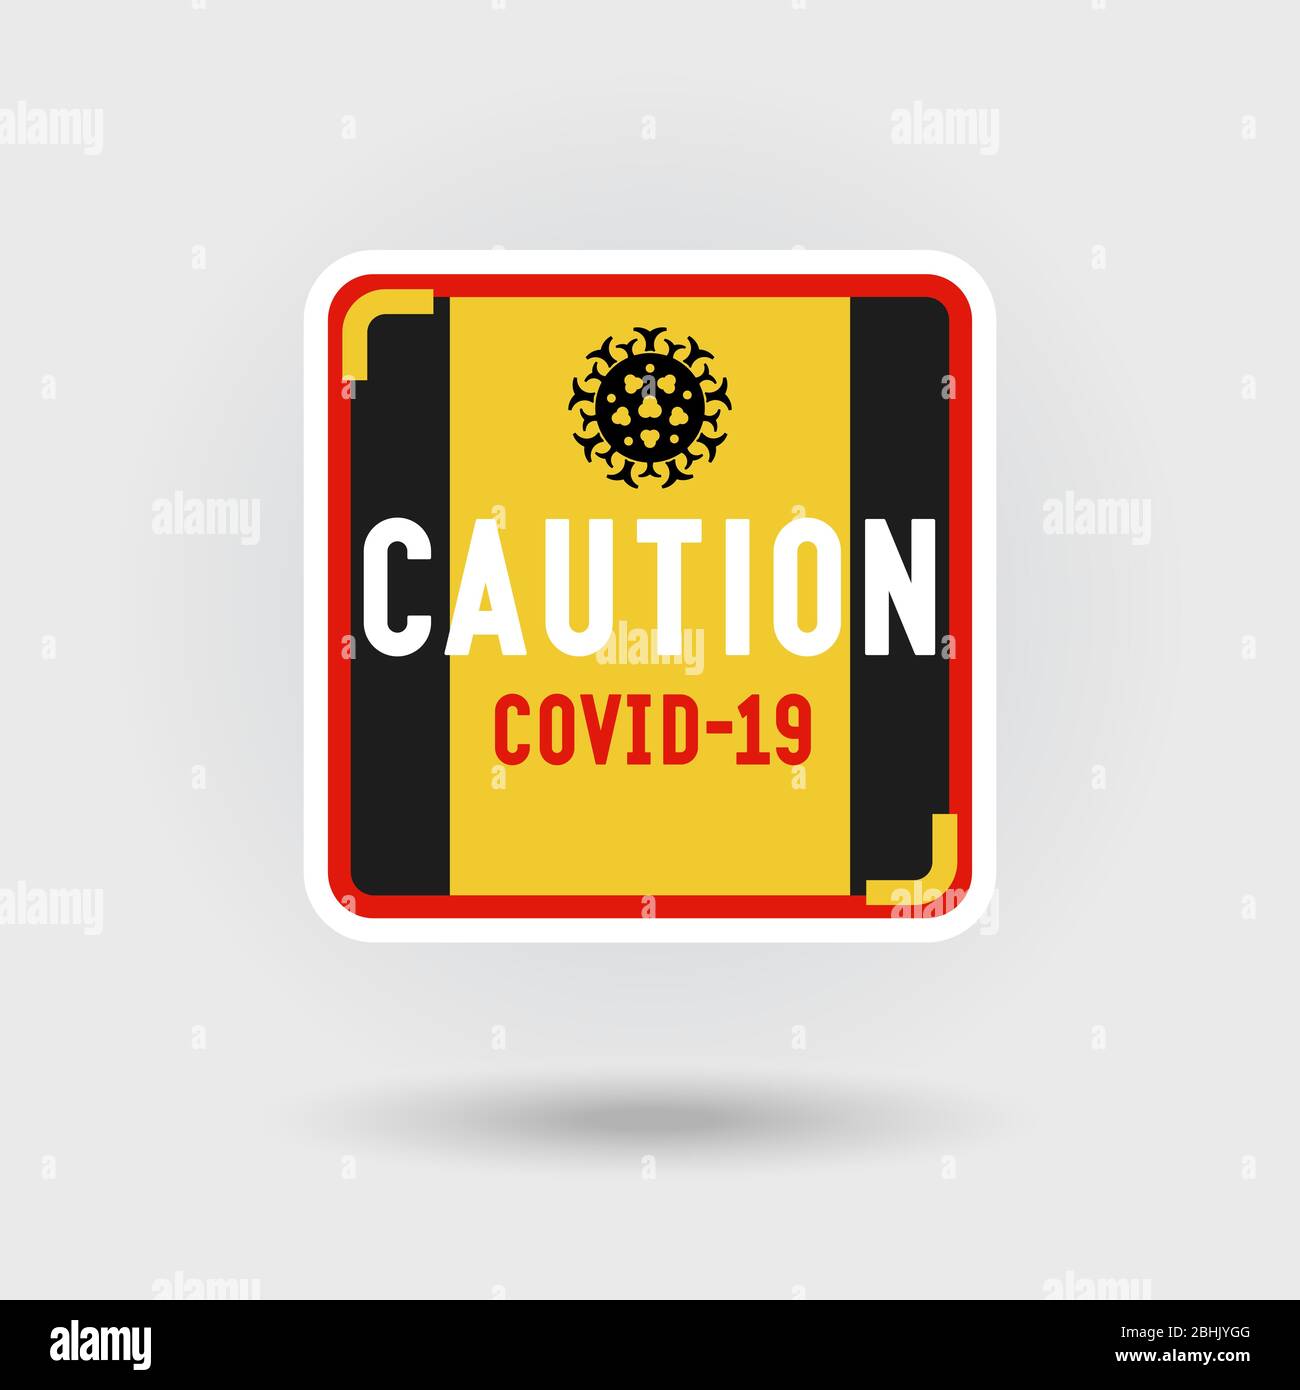 COVID-19 segnale di avvertenza per coronavirus. Include un'icona stilizzata del virus patogeno. Il messaggio richiede attenzione. Design a forma quadrata. Illustrazione Vettoriale